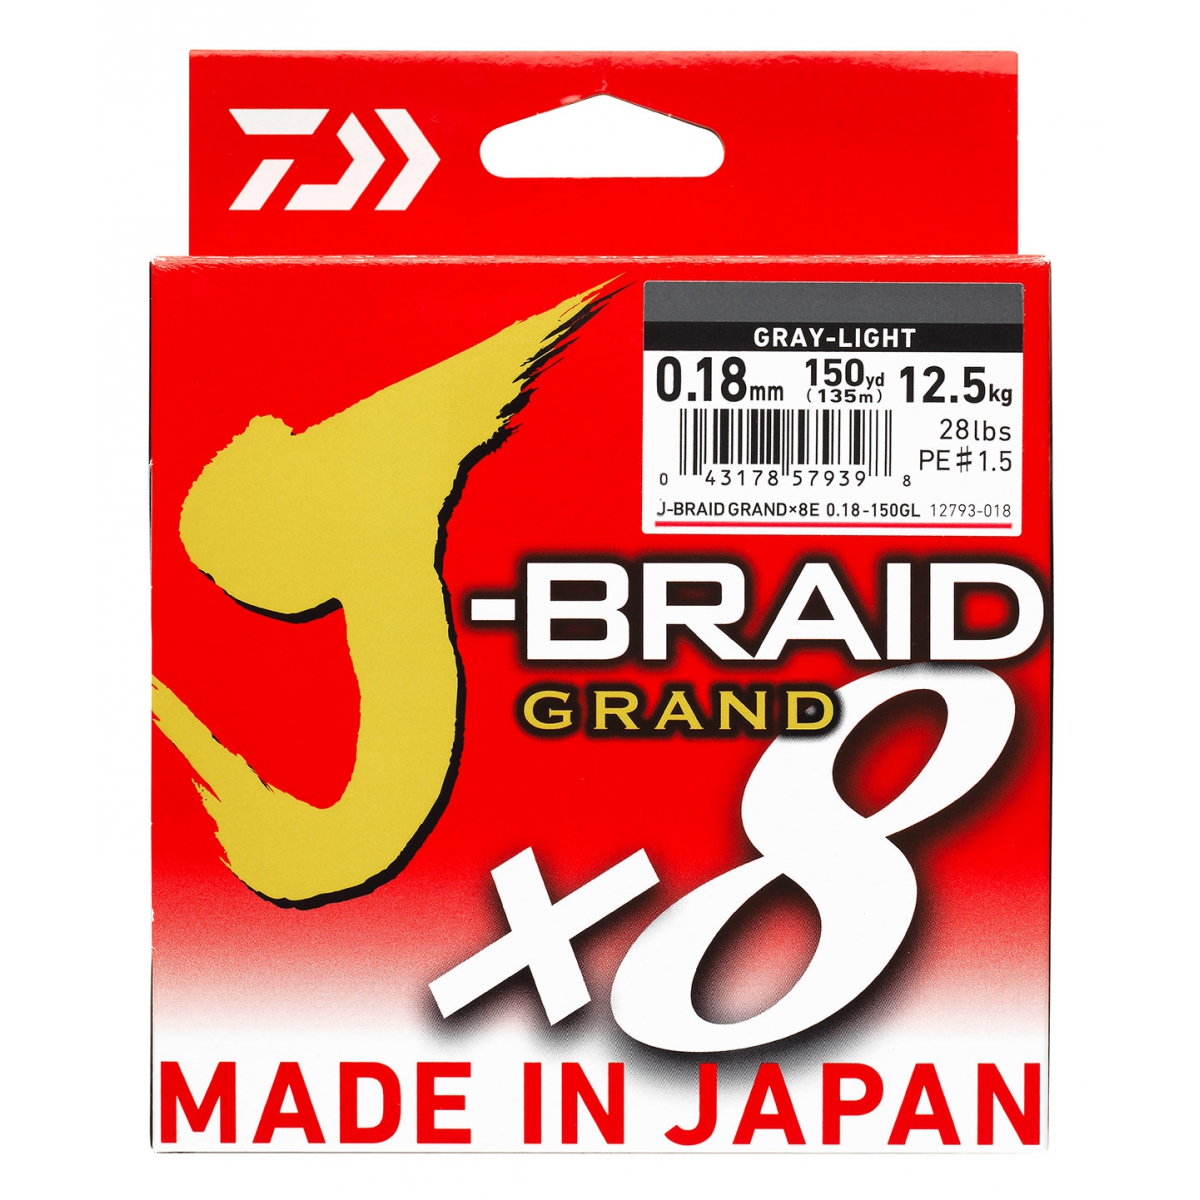 DAIWA J-BRAID X8 GRAND 150YD SPOOL BRAIDED LINE (Grey-Light)